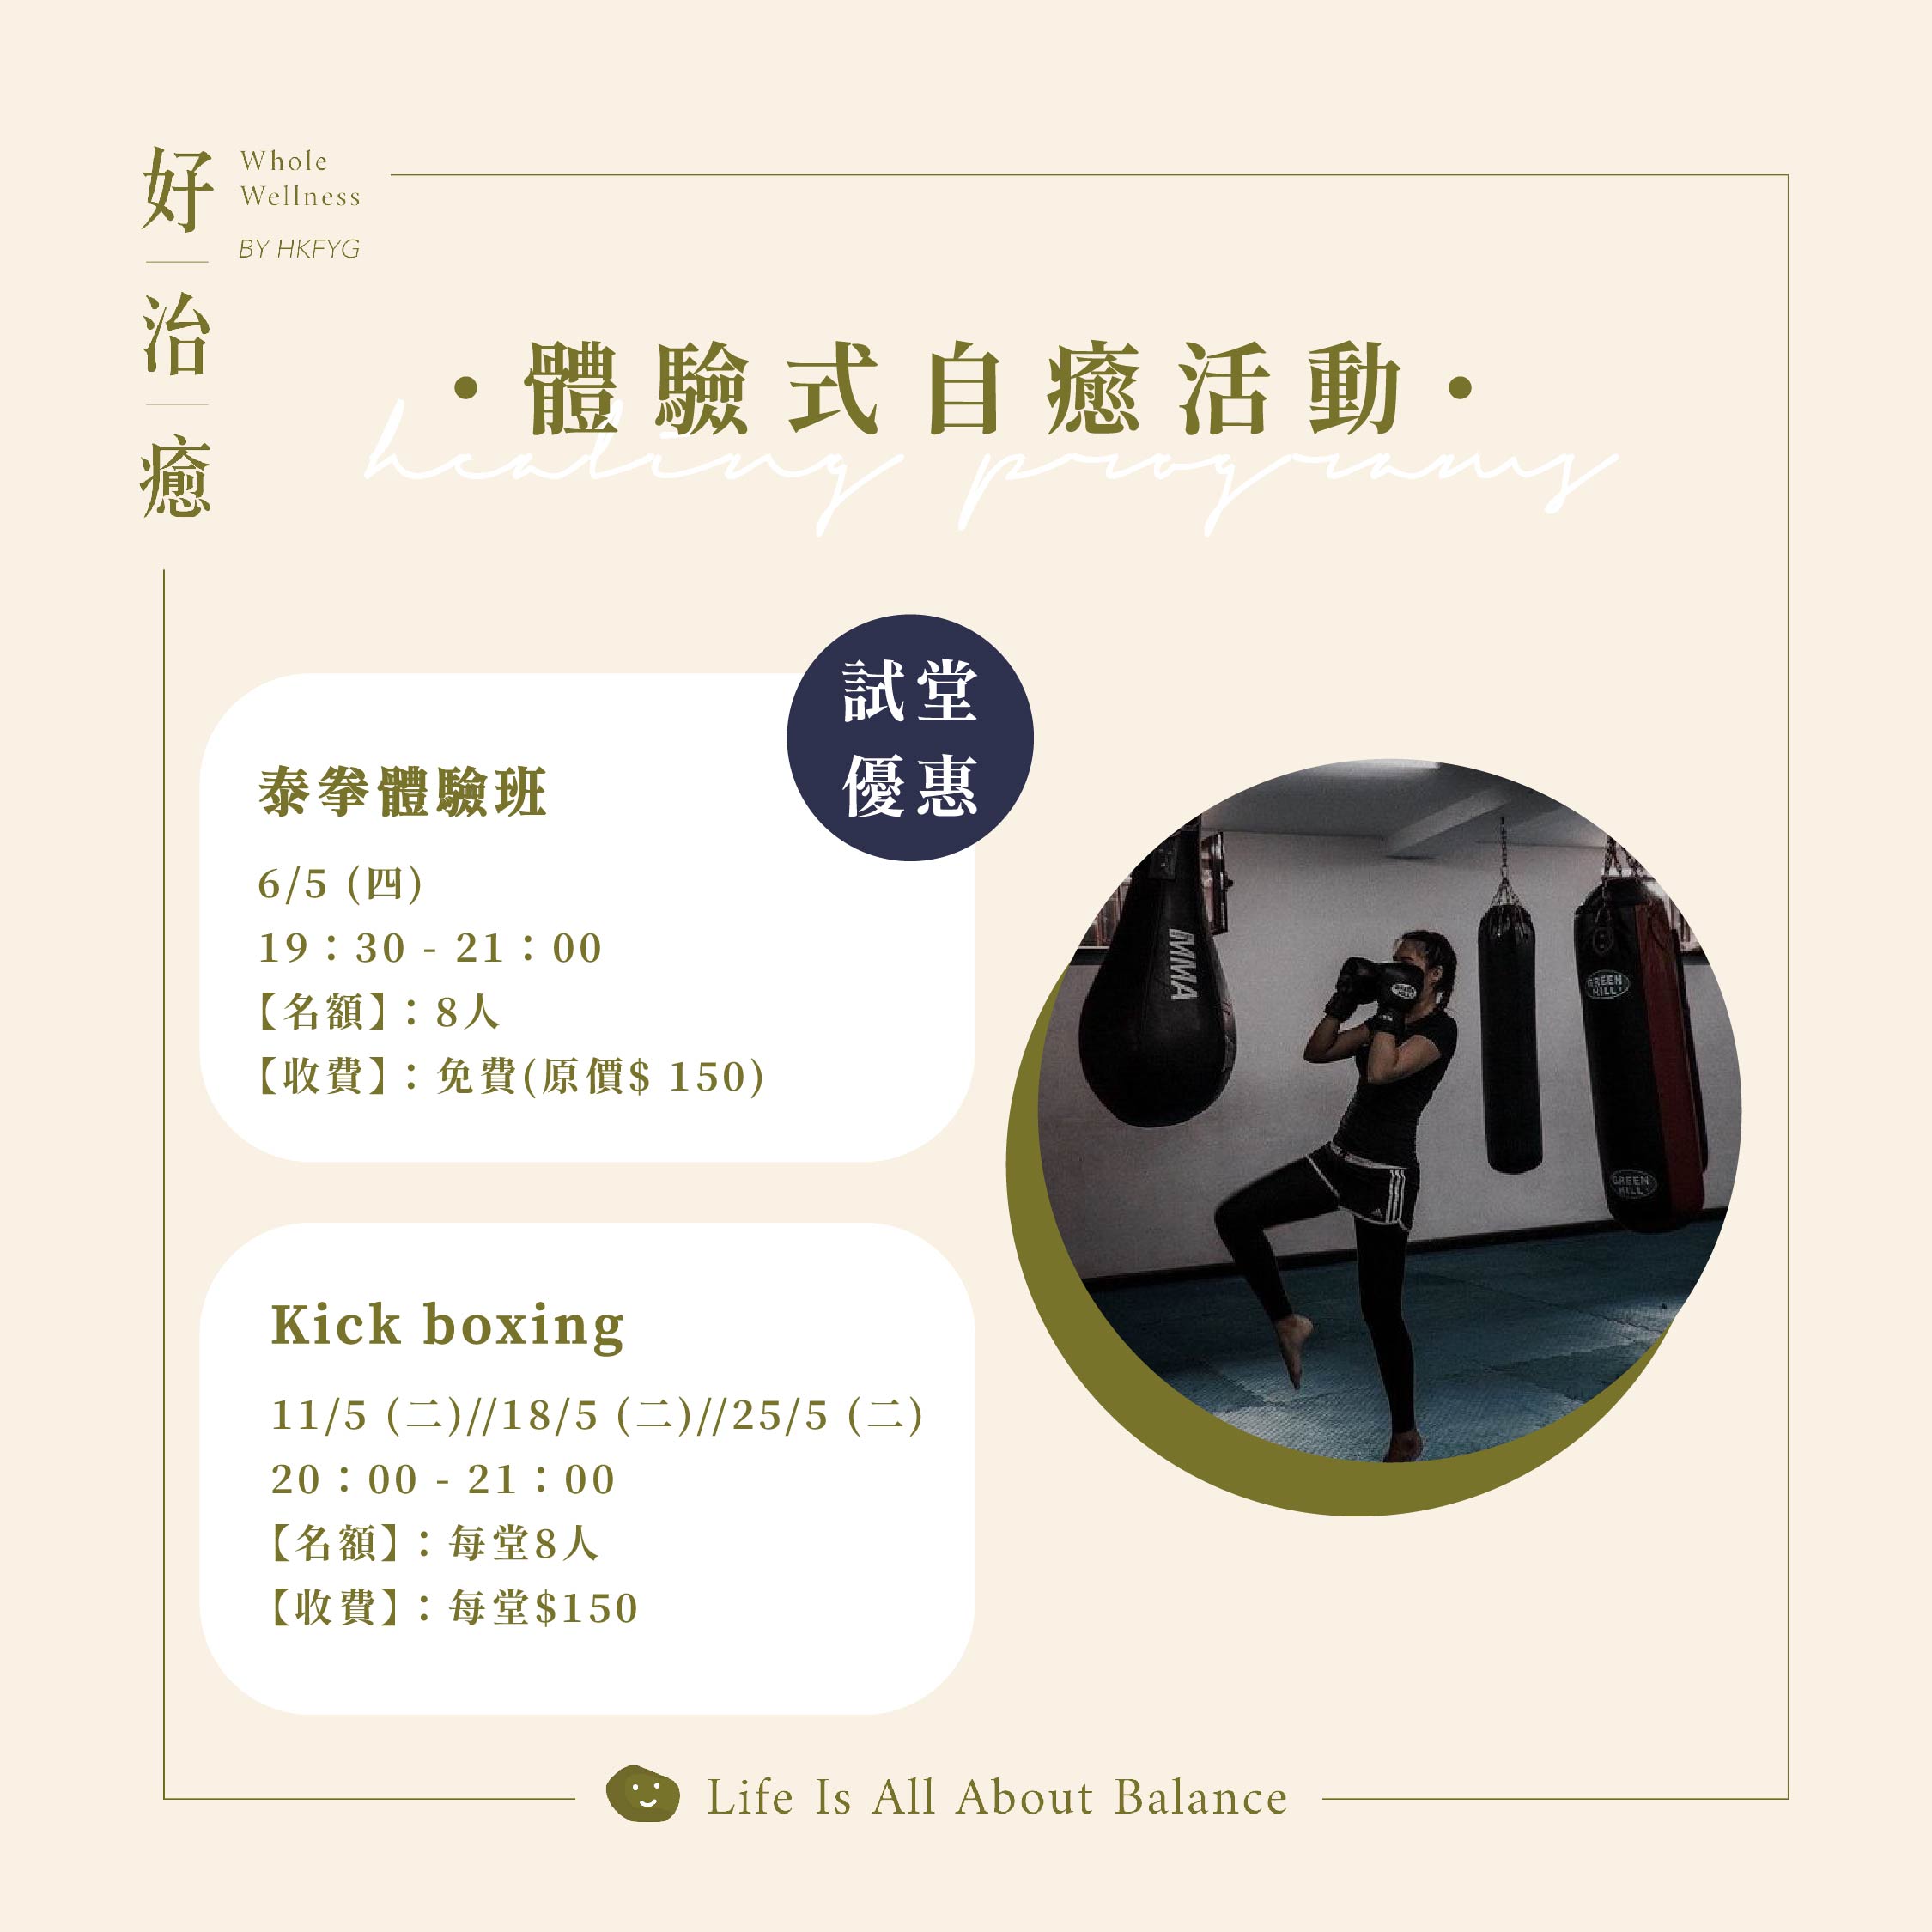 【體驗式自癒工作坊】Kick Boxing 常規班(25/5)